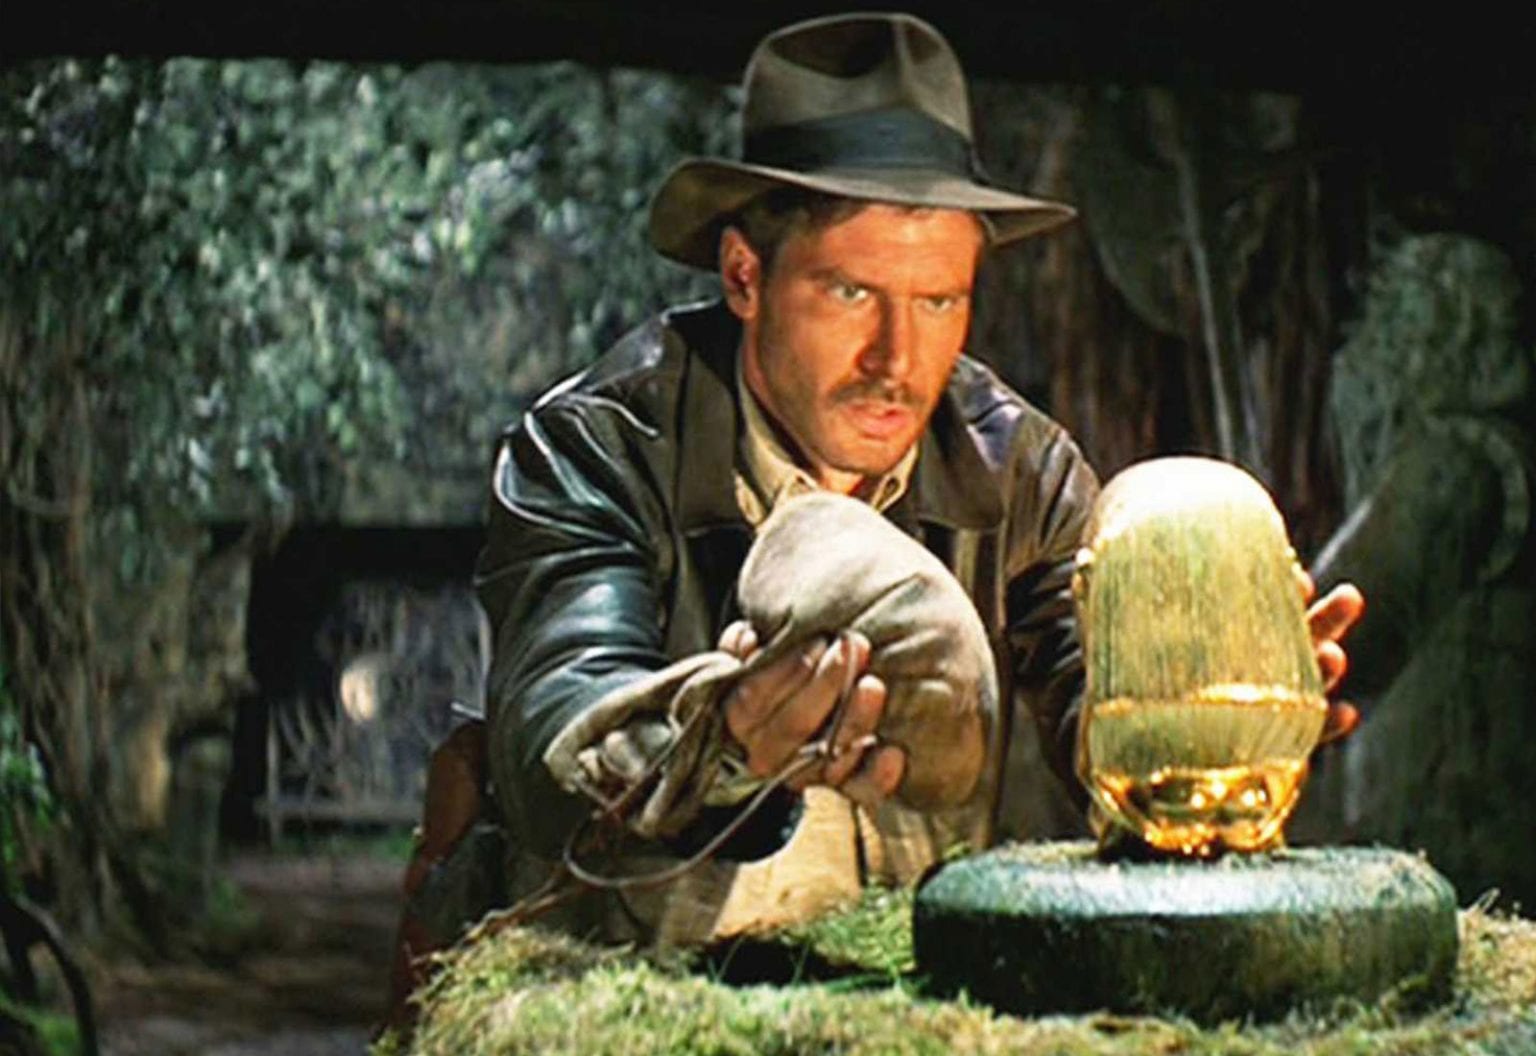 Indiana Jones 5 Begins Production: When is it Coming? - OtakuKart